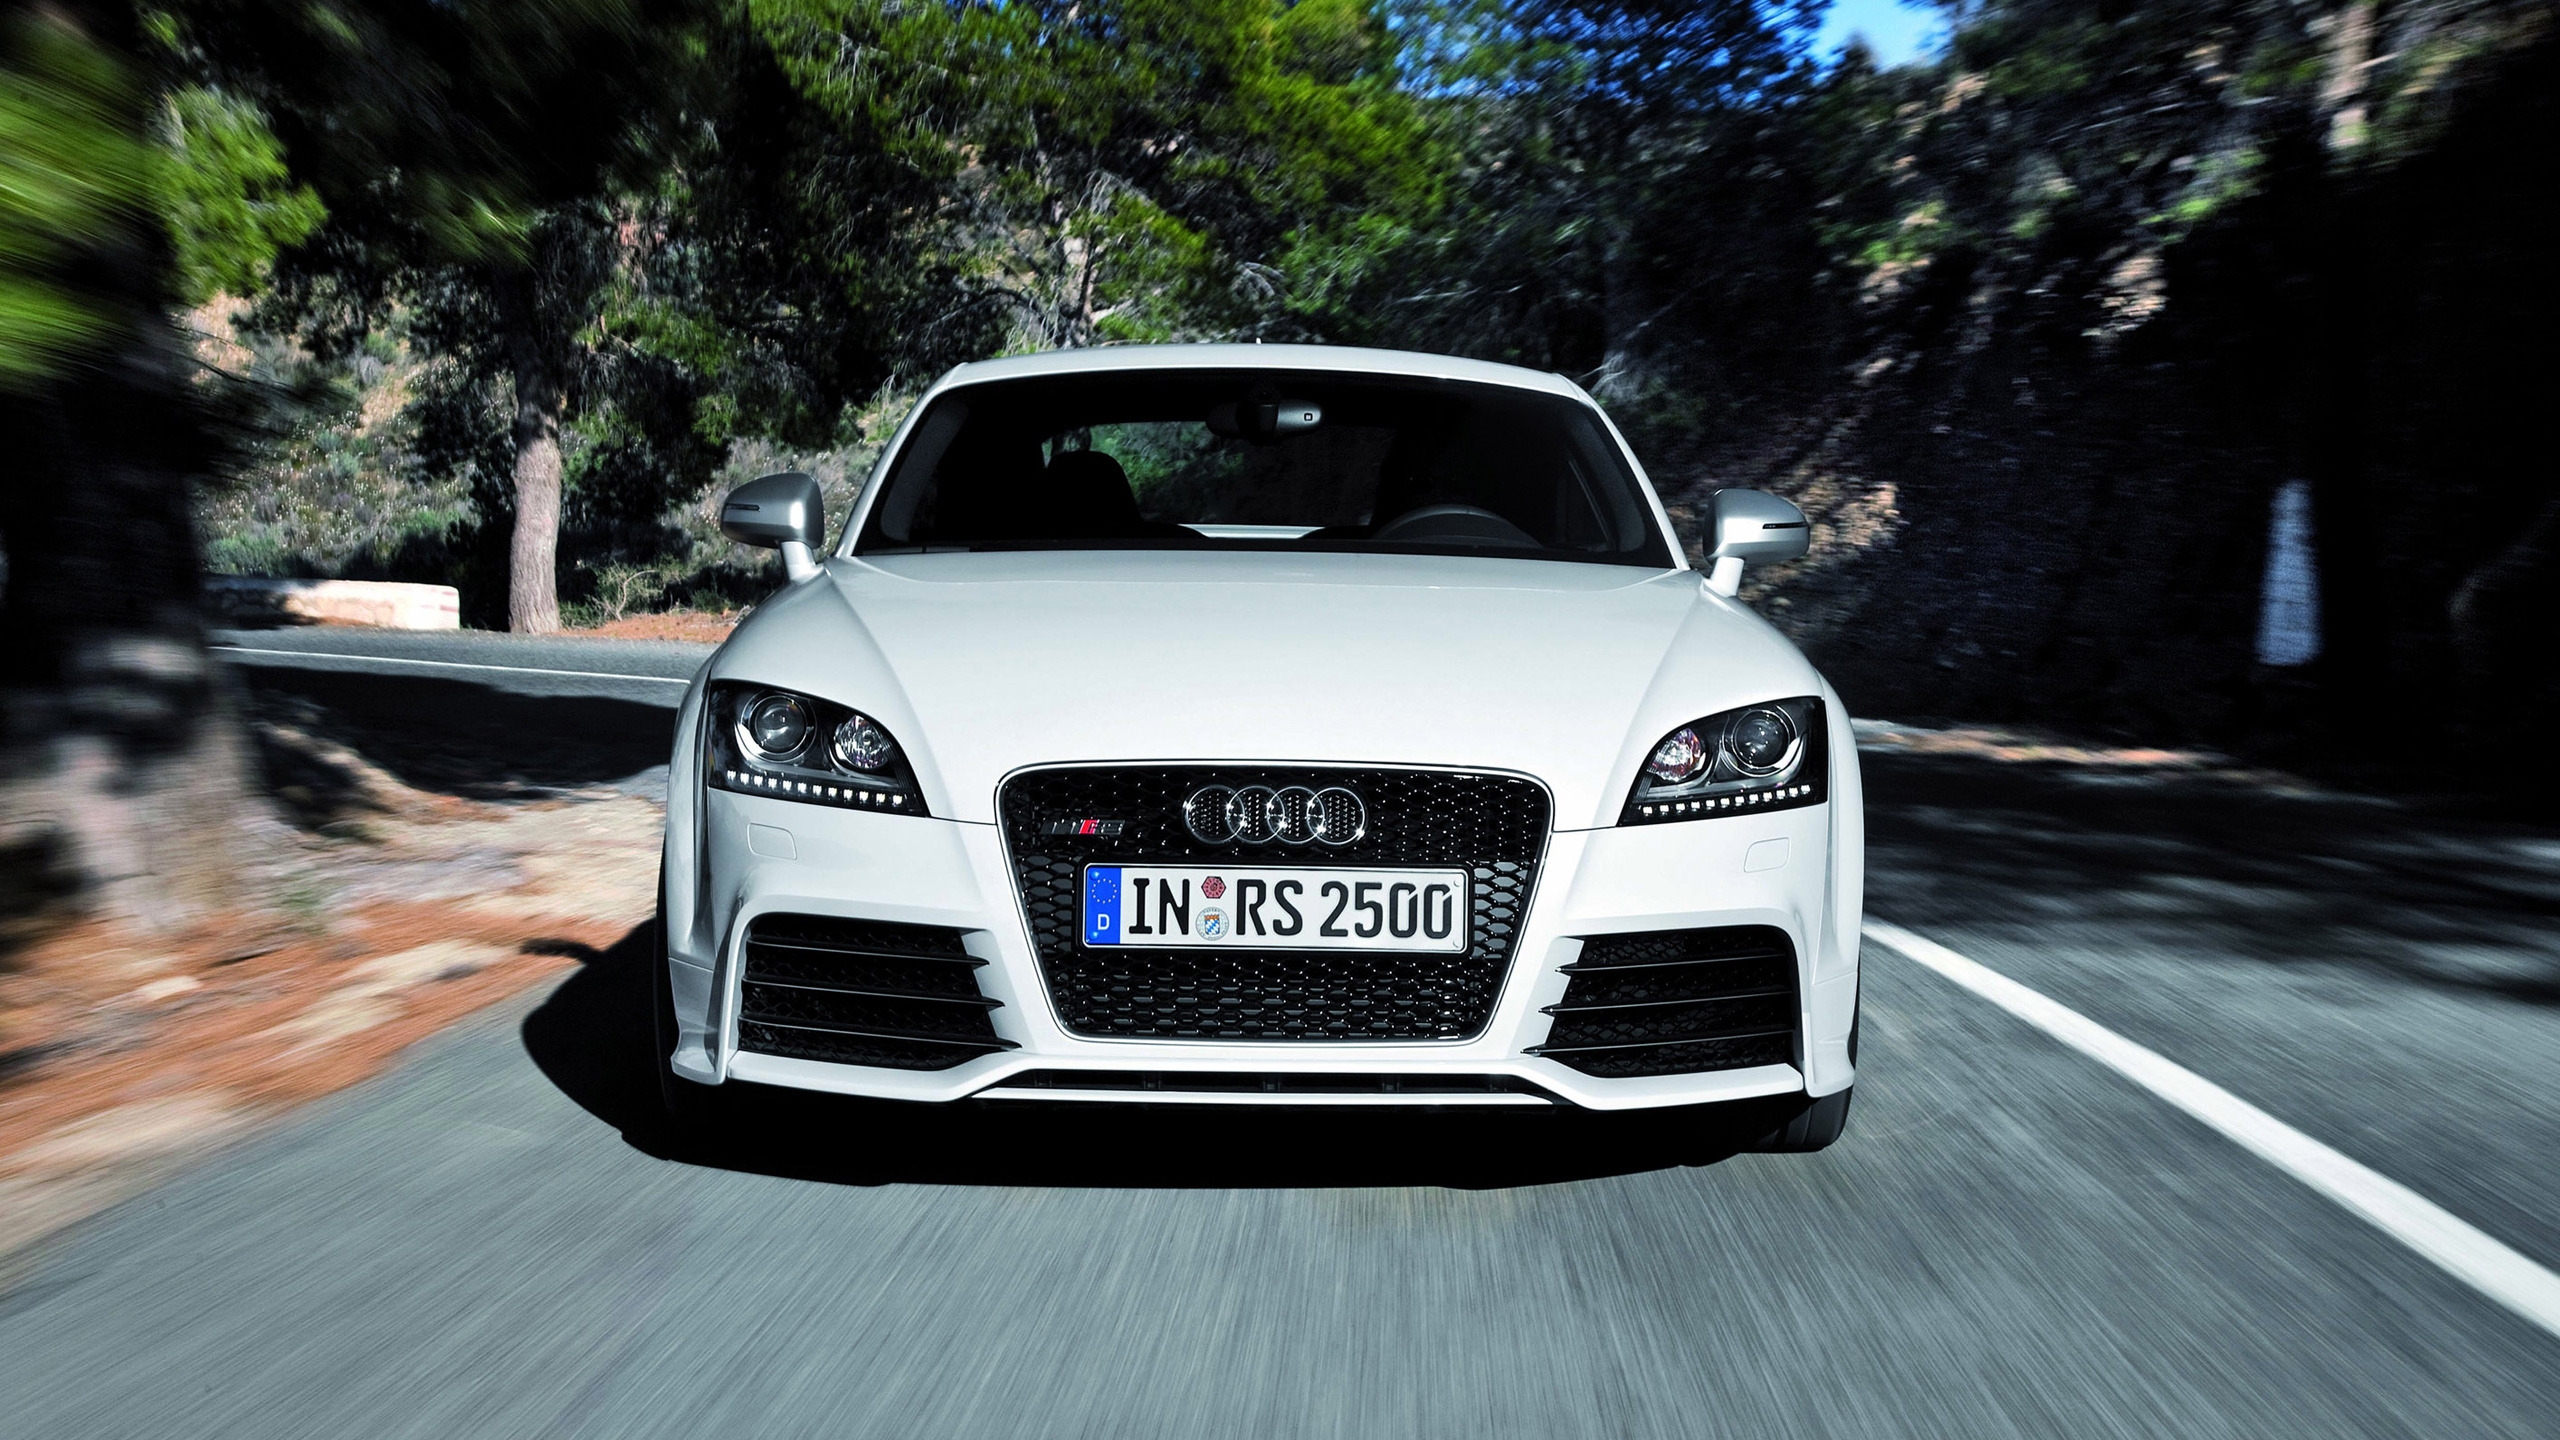 Audi TT RS 2012 Speed for 2560x1440 HDTV resolution